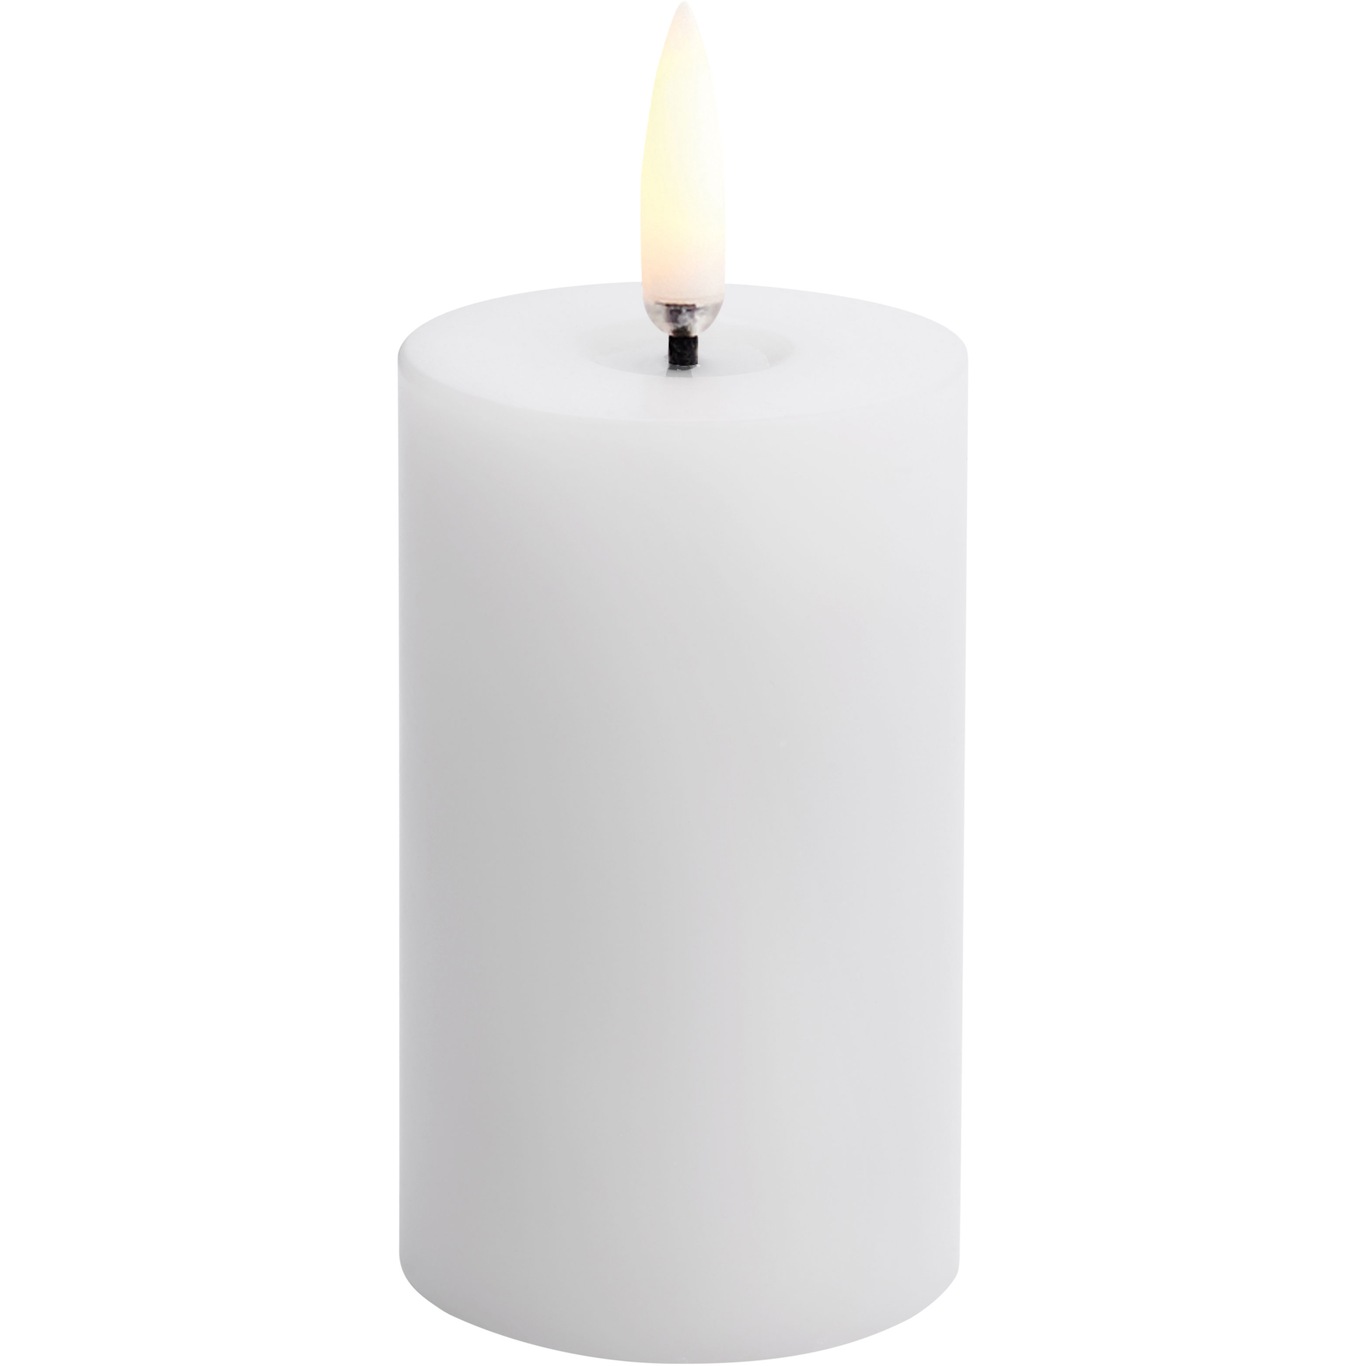 LED Kubbelys Smeltet Nordic White, 5x7,5 cm